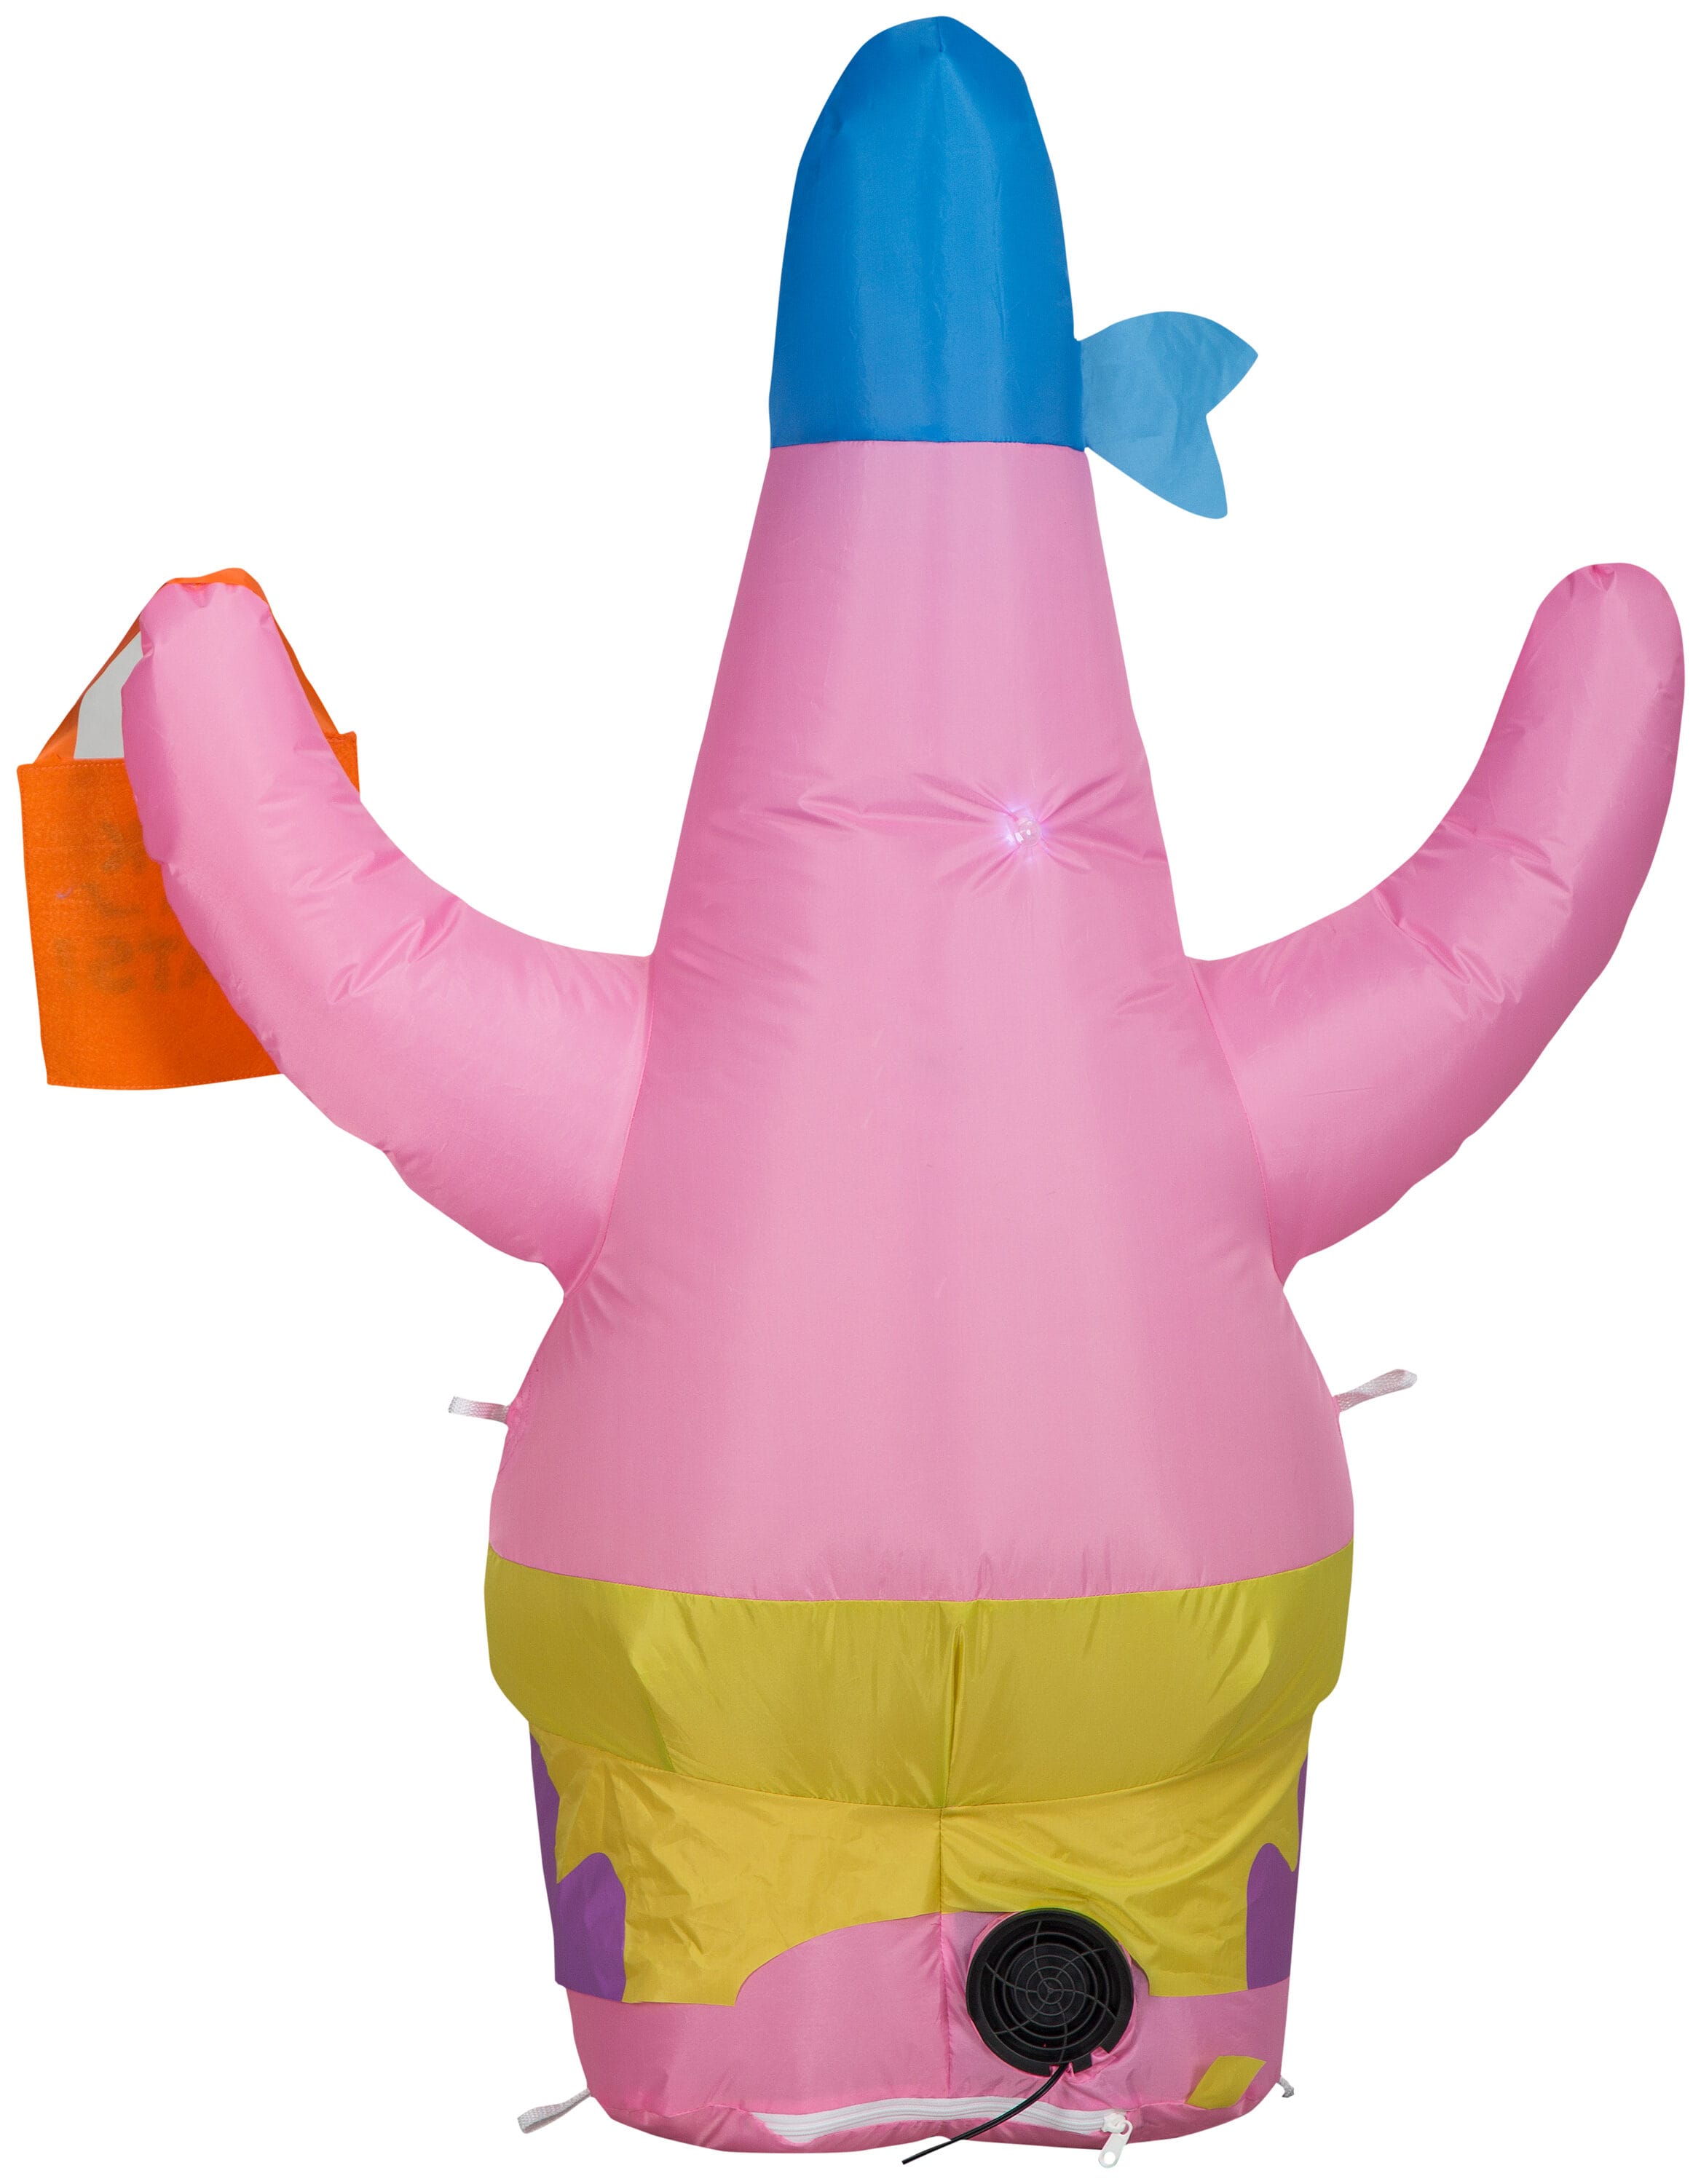 Nickelodeon 3.51-ft Pre-Lit Spongebob Squarepants Patrick Star Pirate  Inflatable at